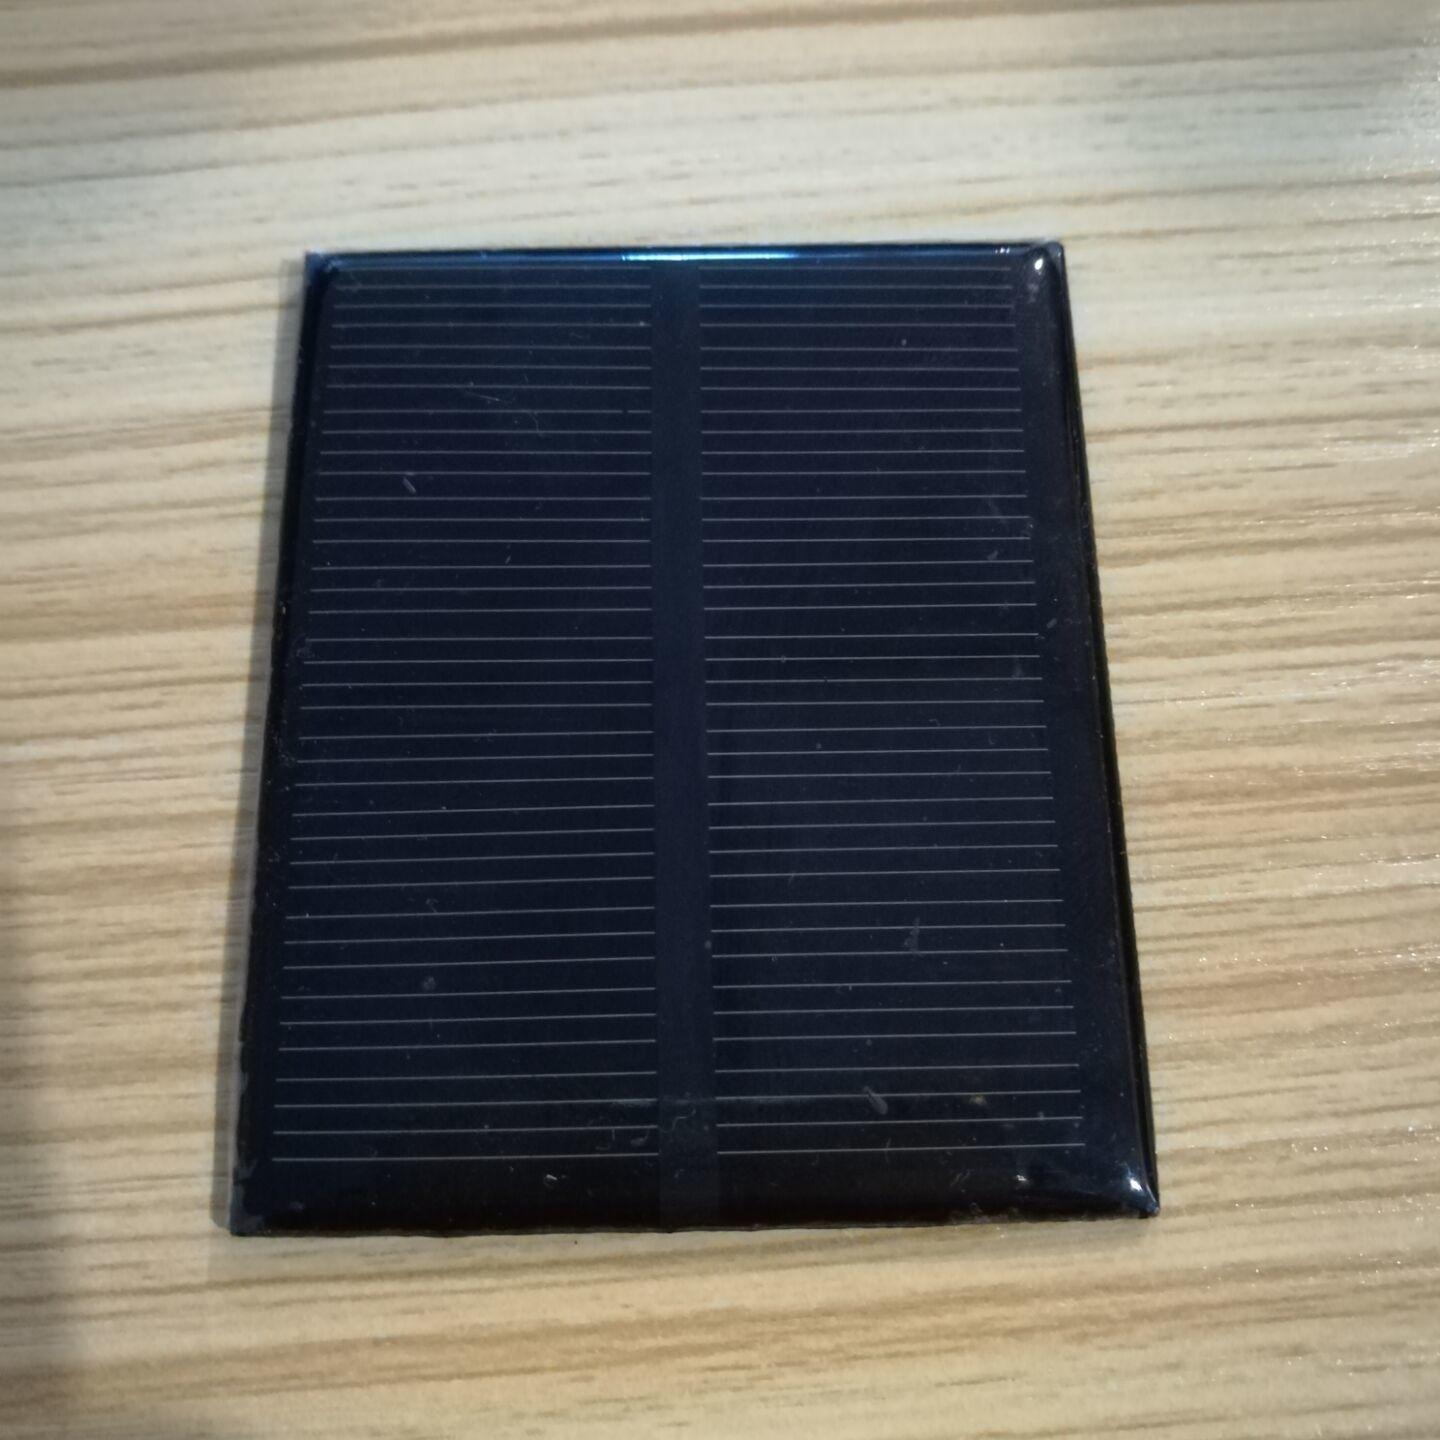 出售库存太阳能板 玩具太阳能板 DIY太阳能电池板 ZD90X45太阳能电池板4